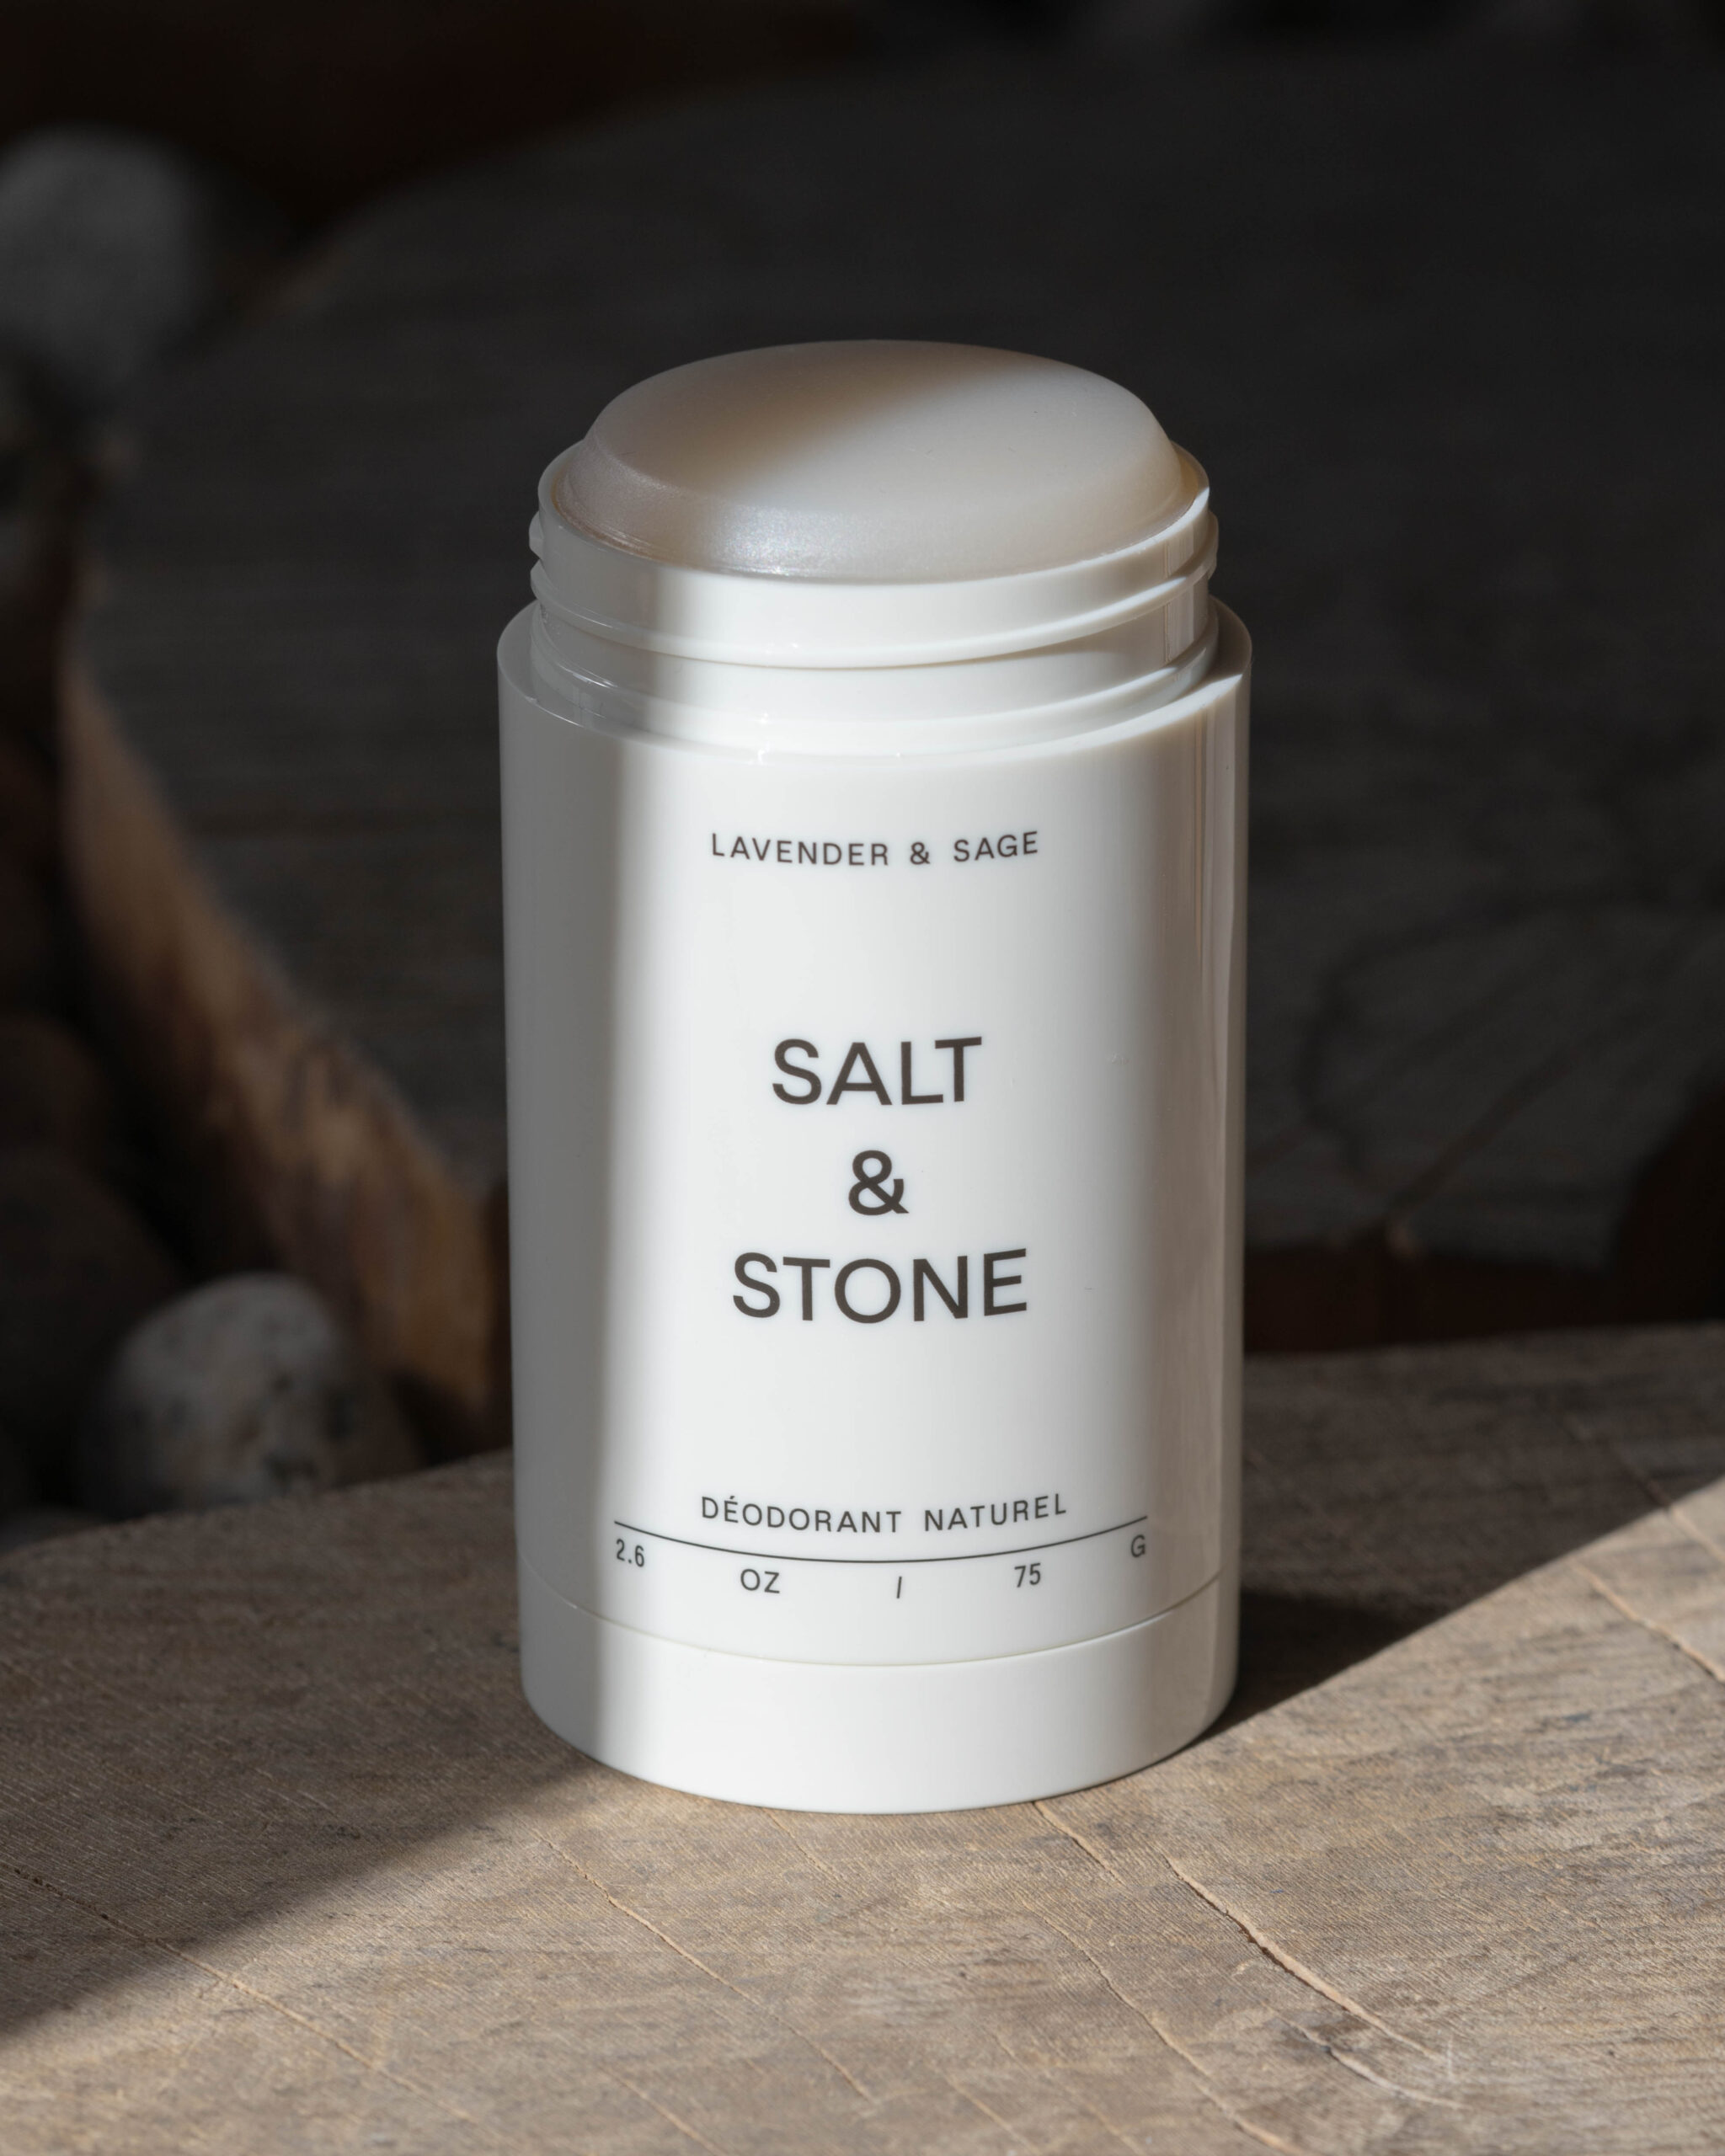 Salt & Stone naturaalne deodorant, Lavender & Sage Hooldusvahendid ja kosmeetika - HellyK - Kvaliteetsed lasteriided, villariided, barefoot jalatsid